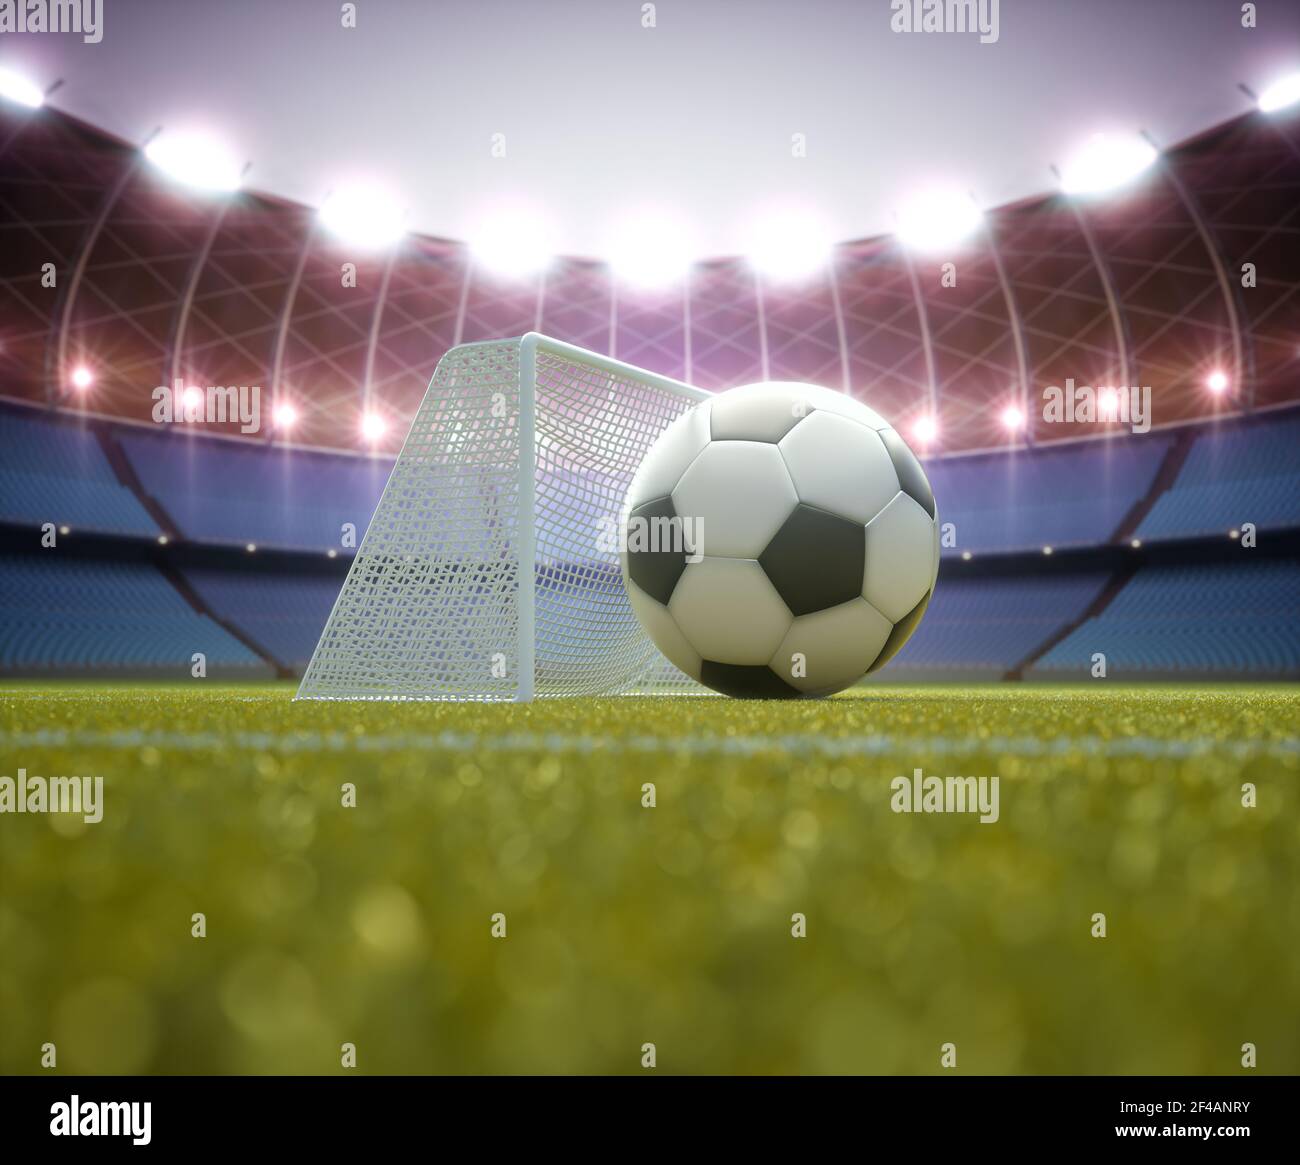 Football stadium, illustration Stock Photo - Alamy